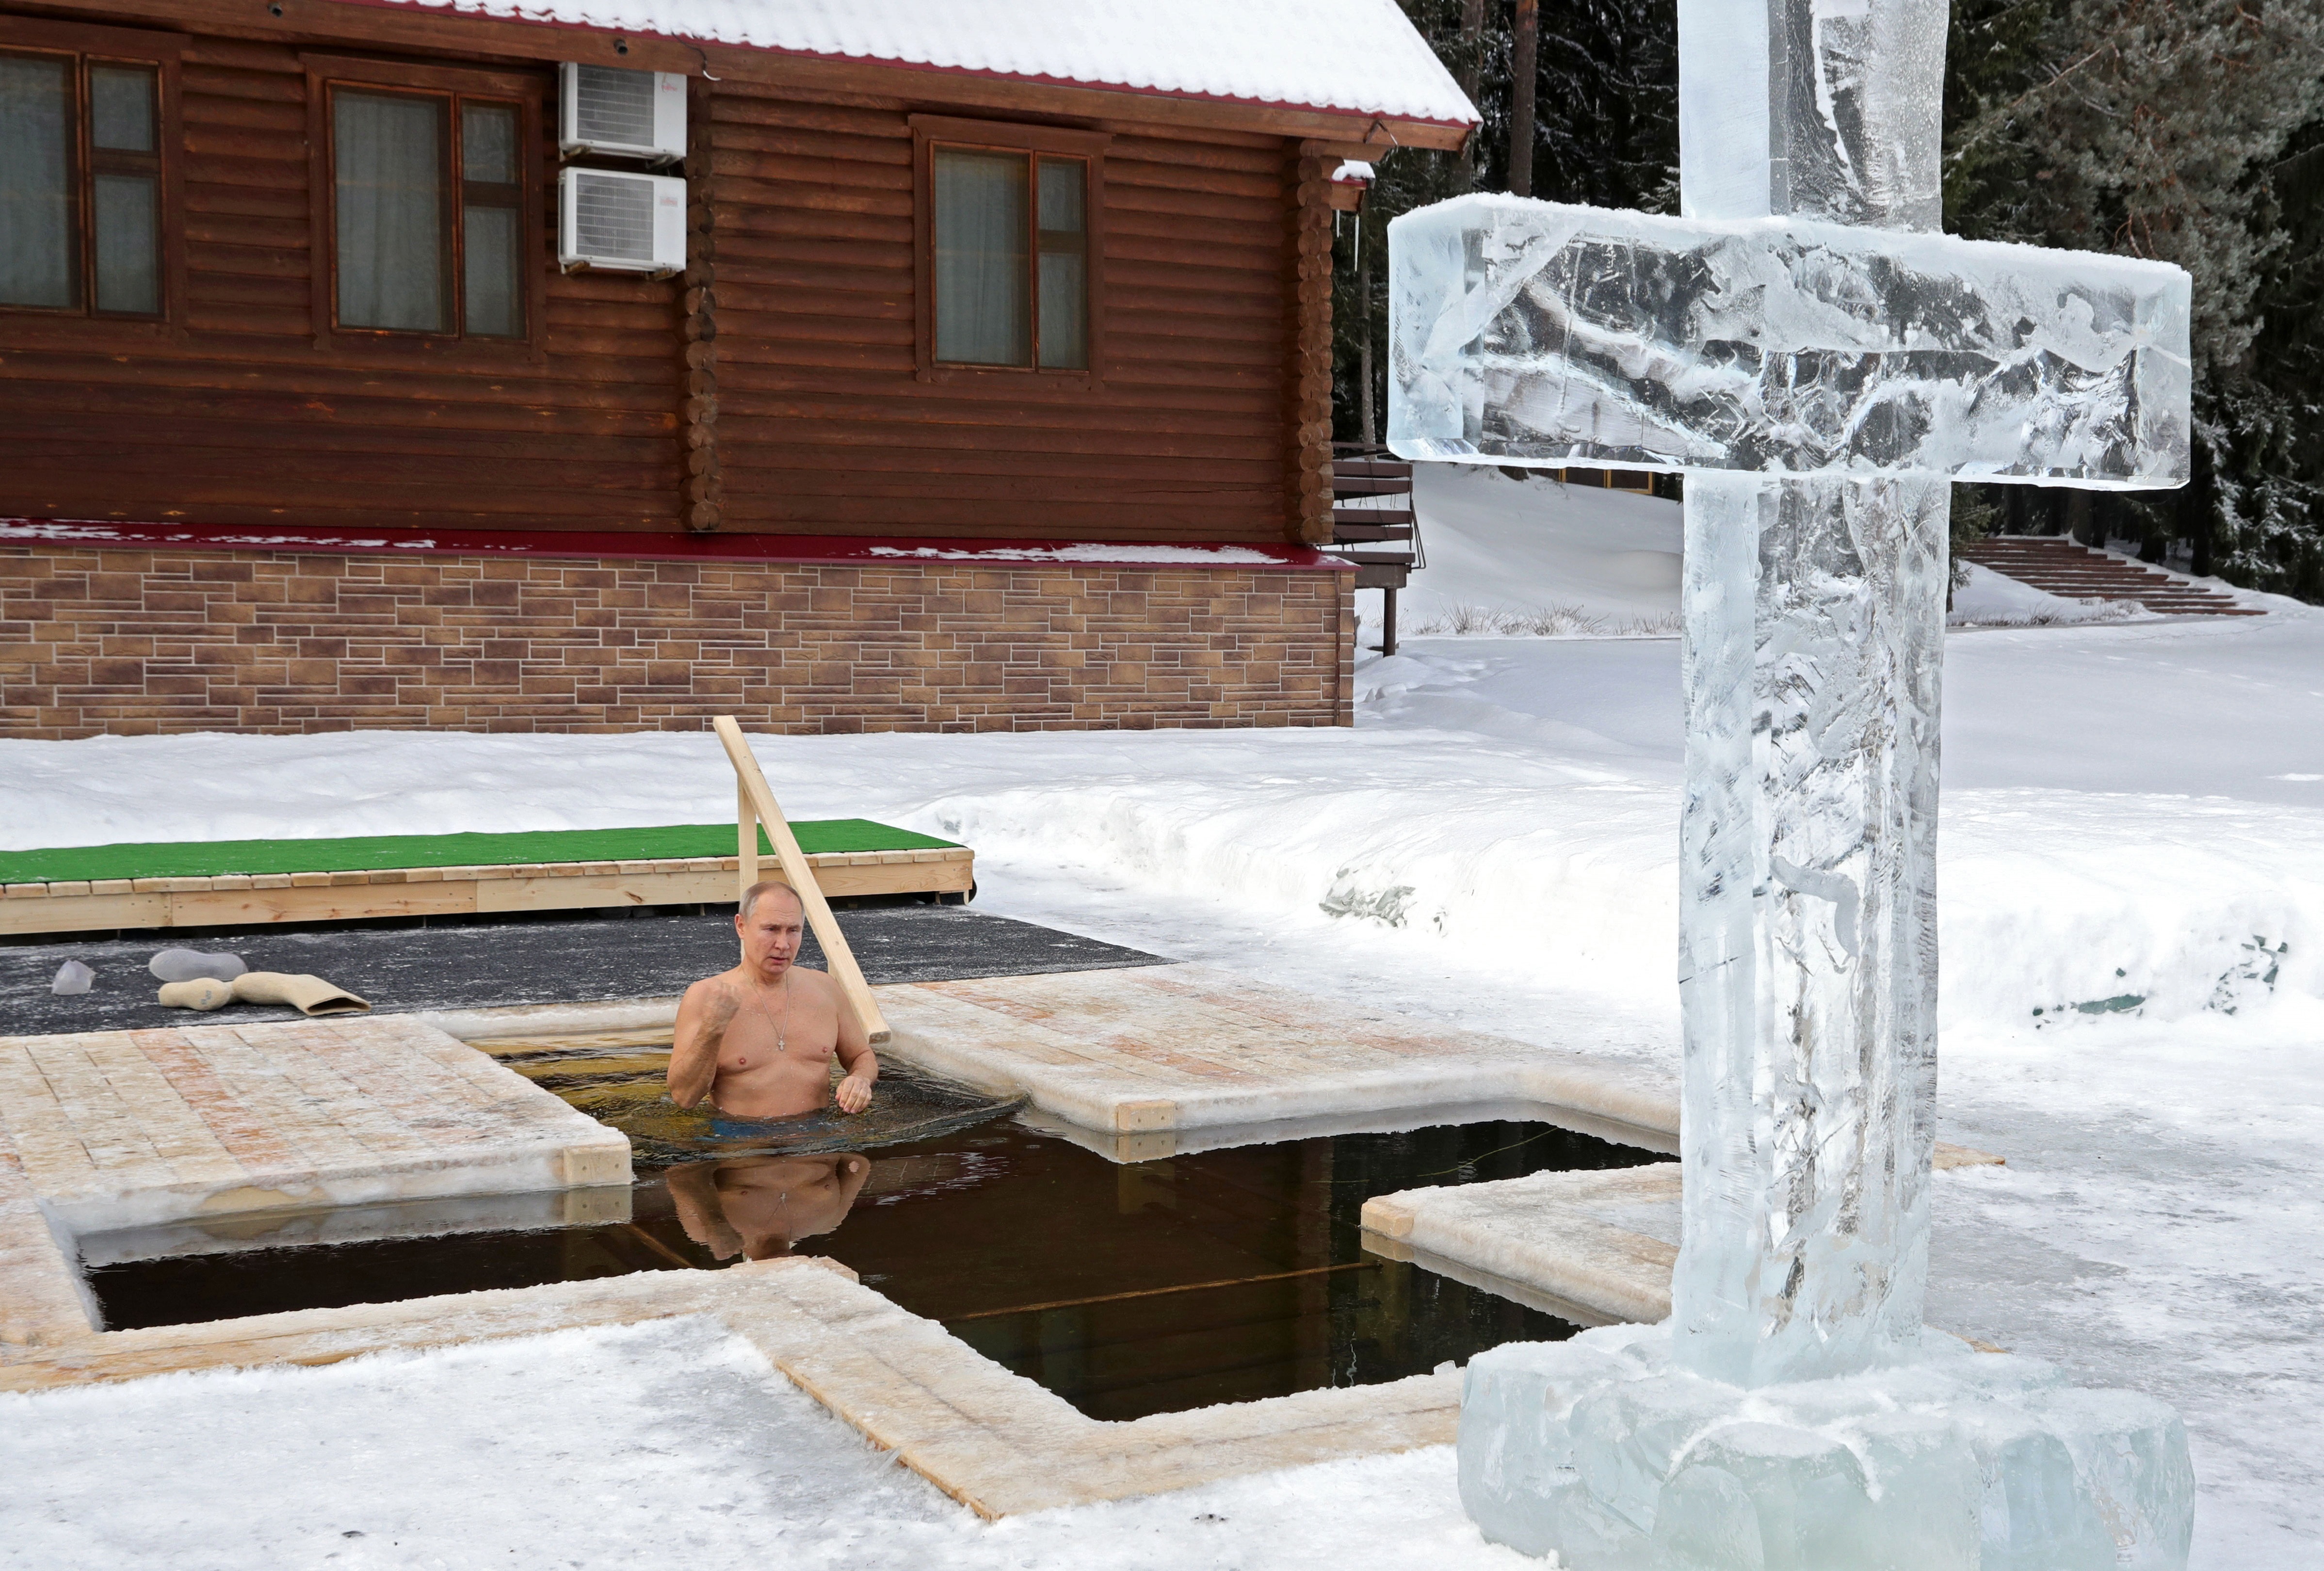 sumergiéndose en agua helada a una temperatura de -20ºC, cumpliendo una tradición ortodoxa para celebrar la Epifanía y el bautismo de Cristo (EFE)
